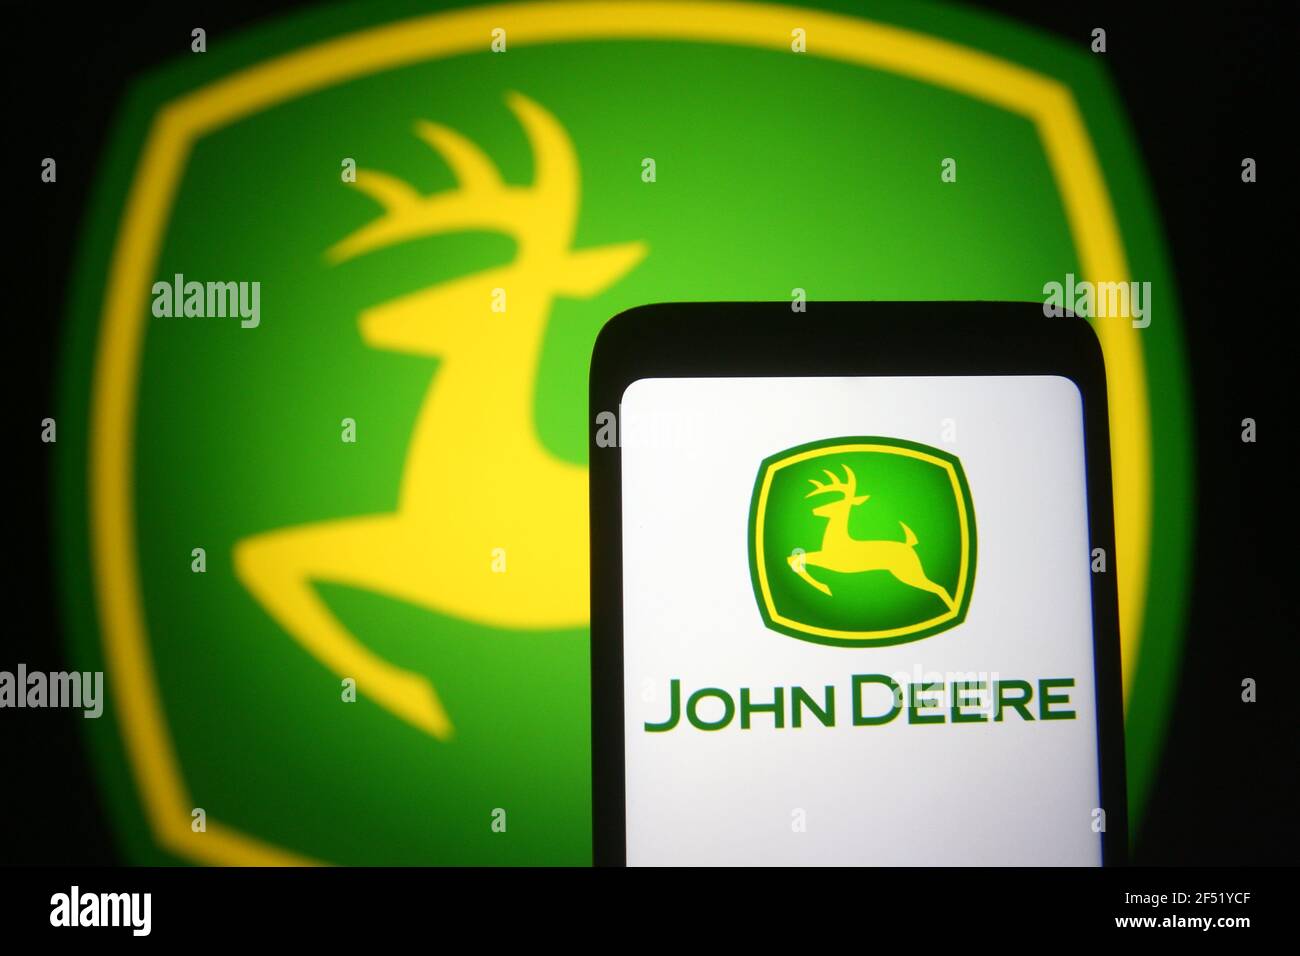 John deere logo HD wallpapers  Pxfuel